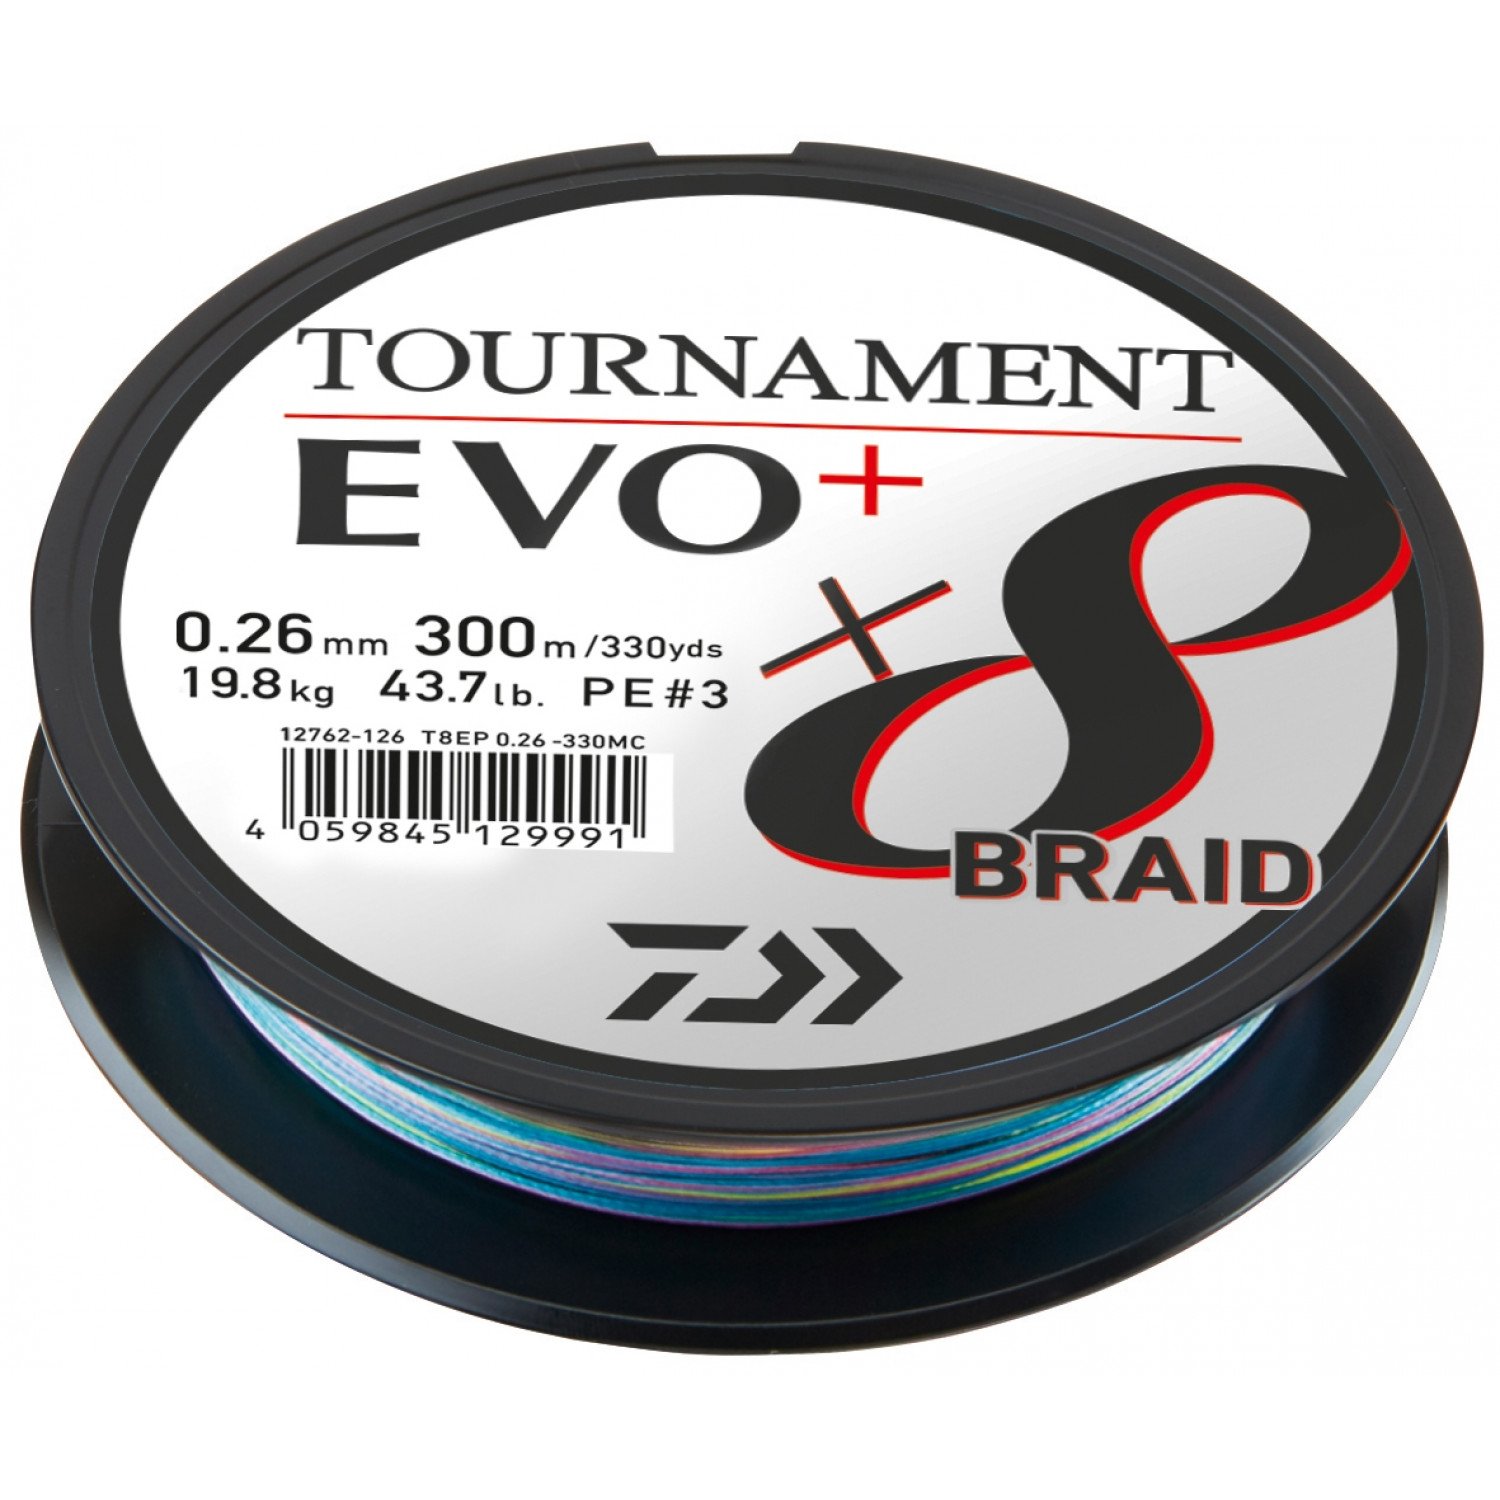 DAIWA Tournament x8 Braid EVO+ Braided Fishing Line multicolor 12762 112 00